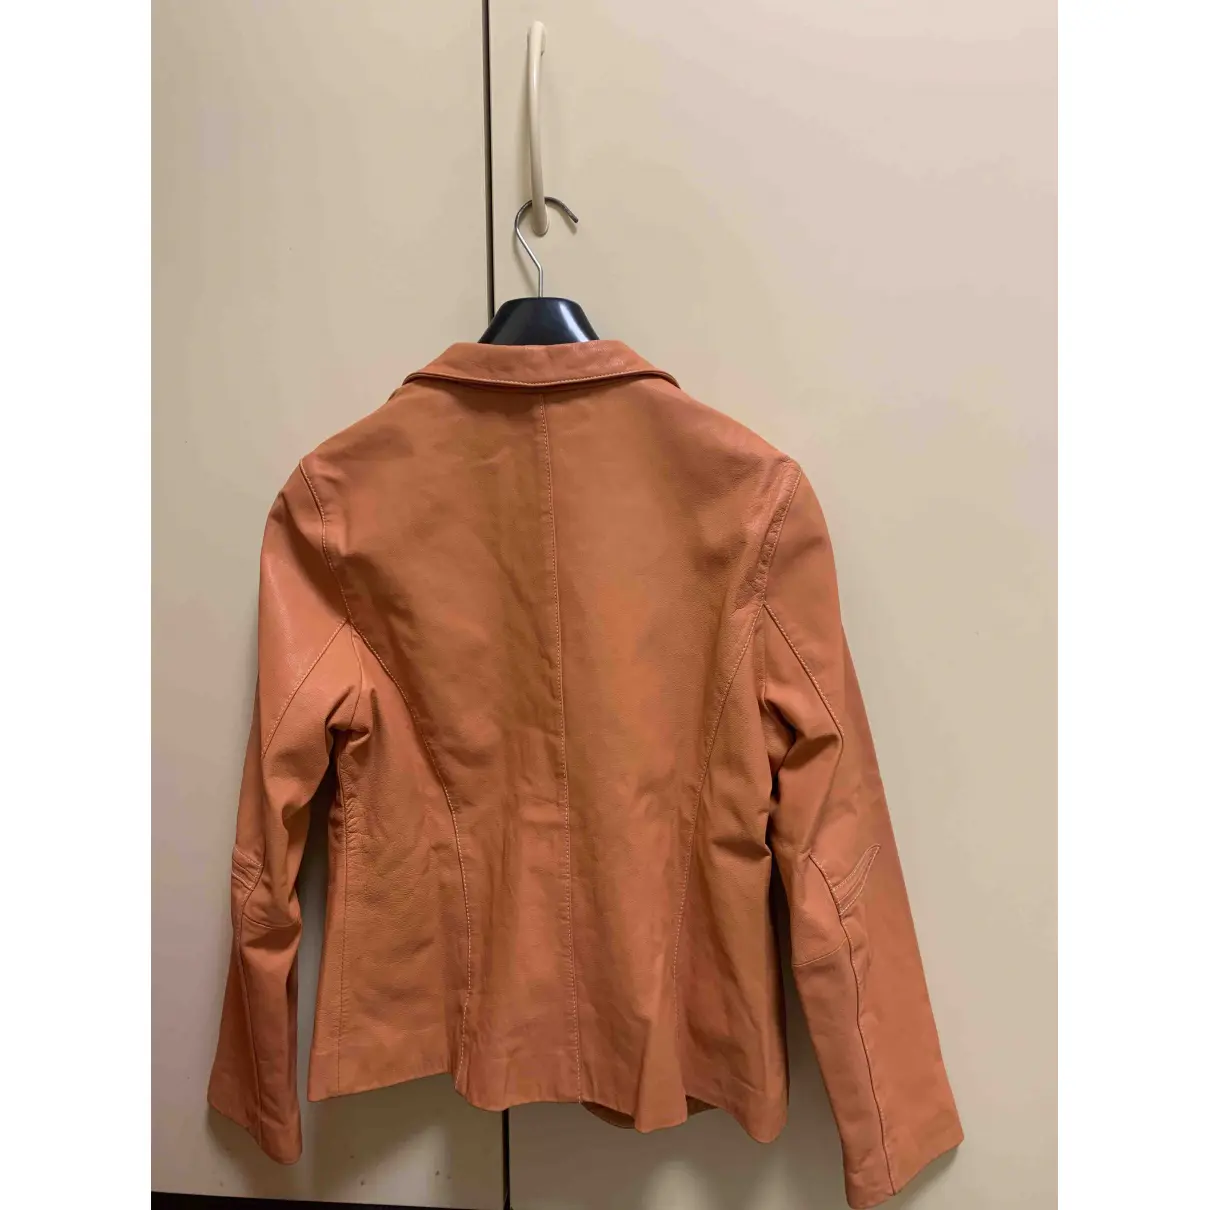 Buy Steffen Schraut Leather jacket online